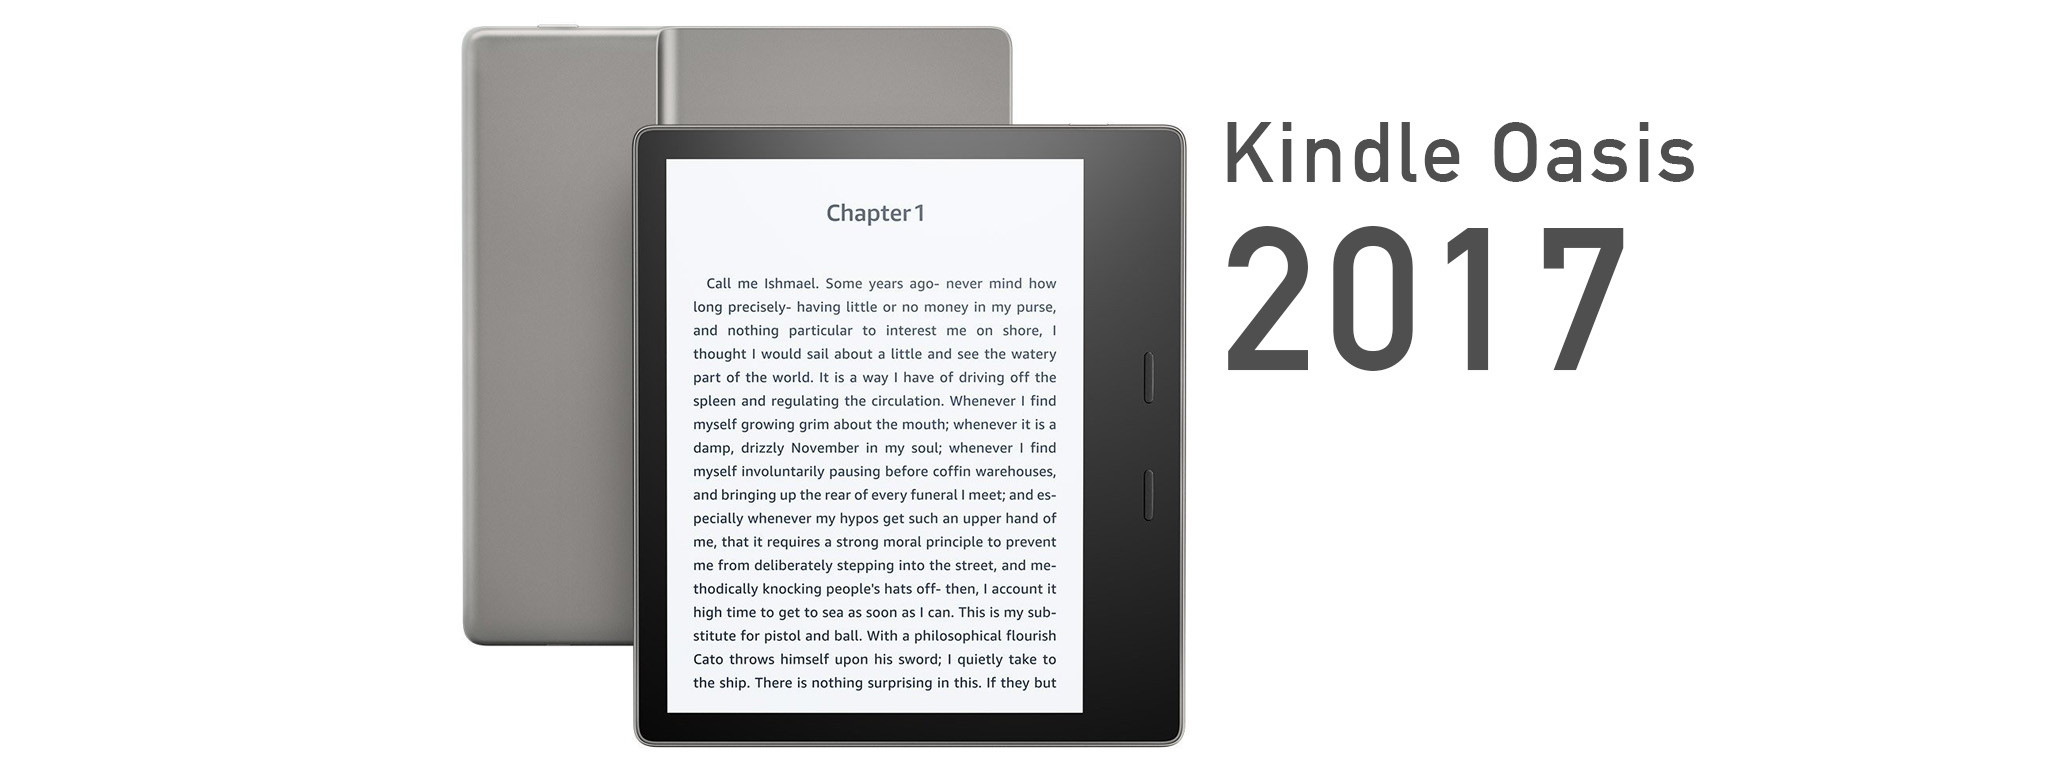 Kindle Oasis mới (2017): Nâng cấp lớn, có kháng nước, giảm giá còn 250 USD